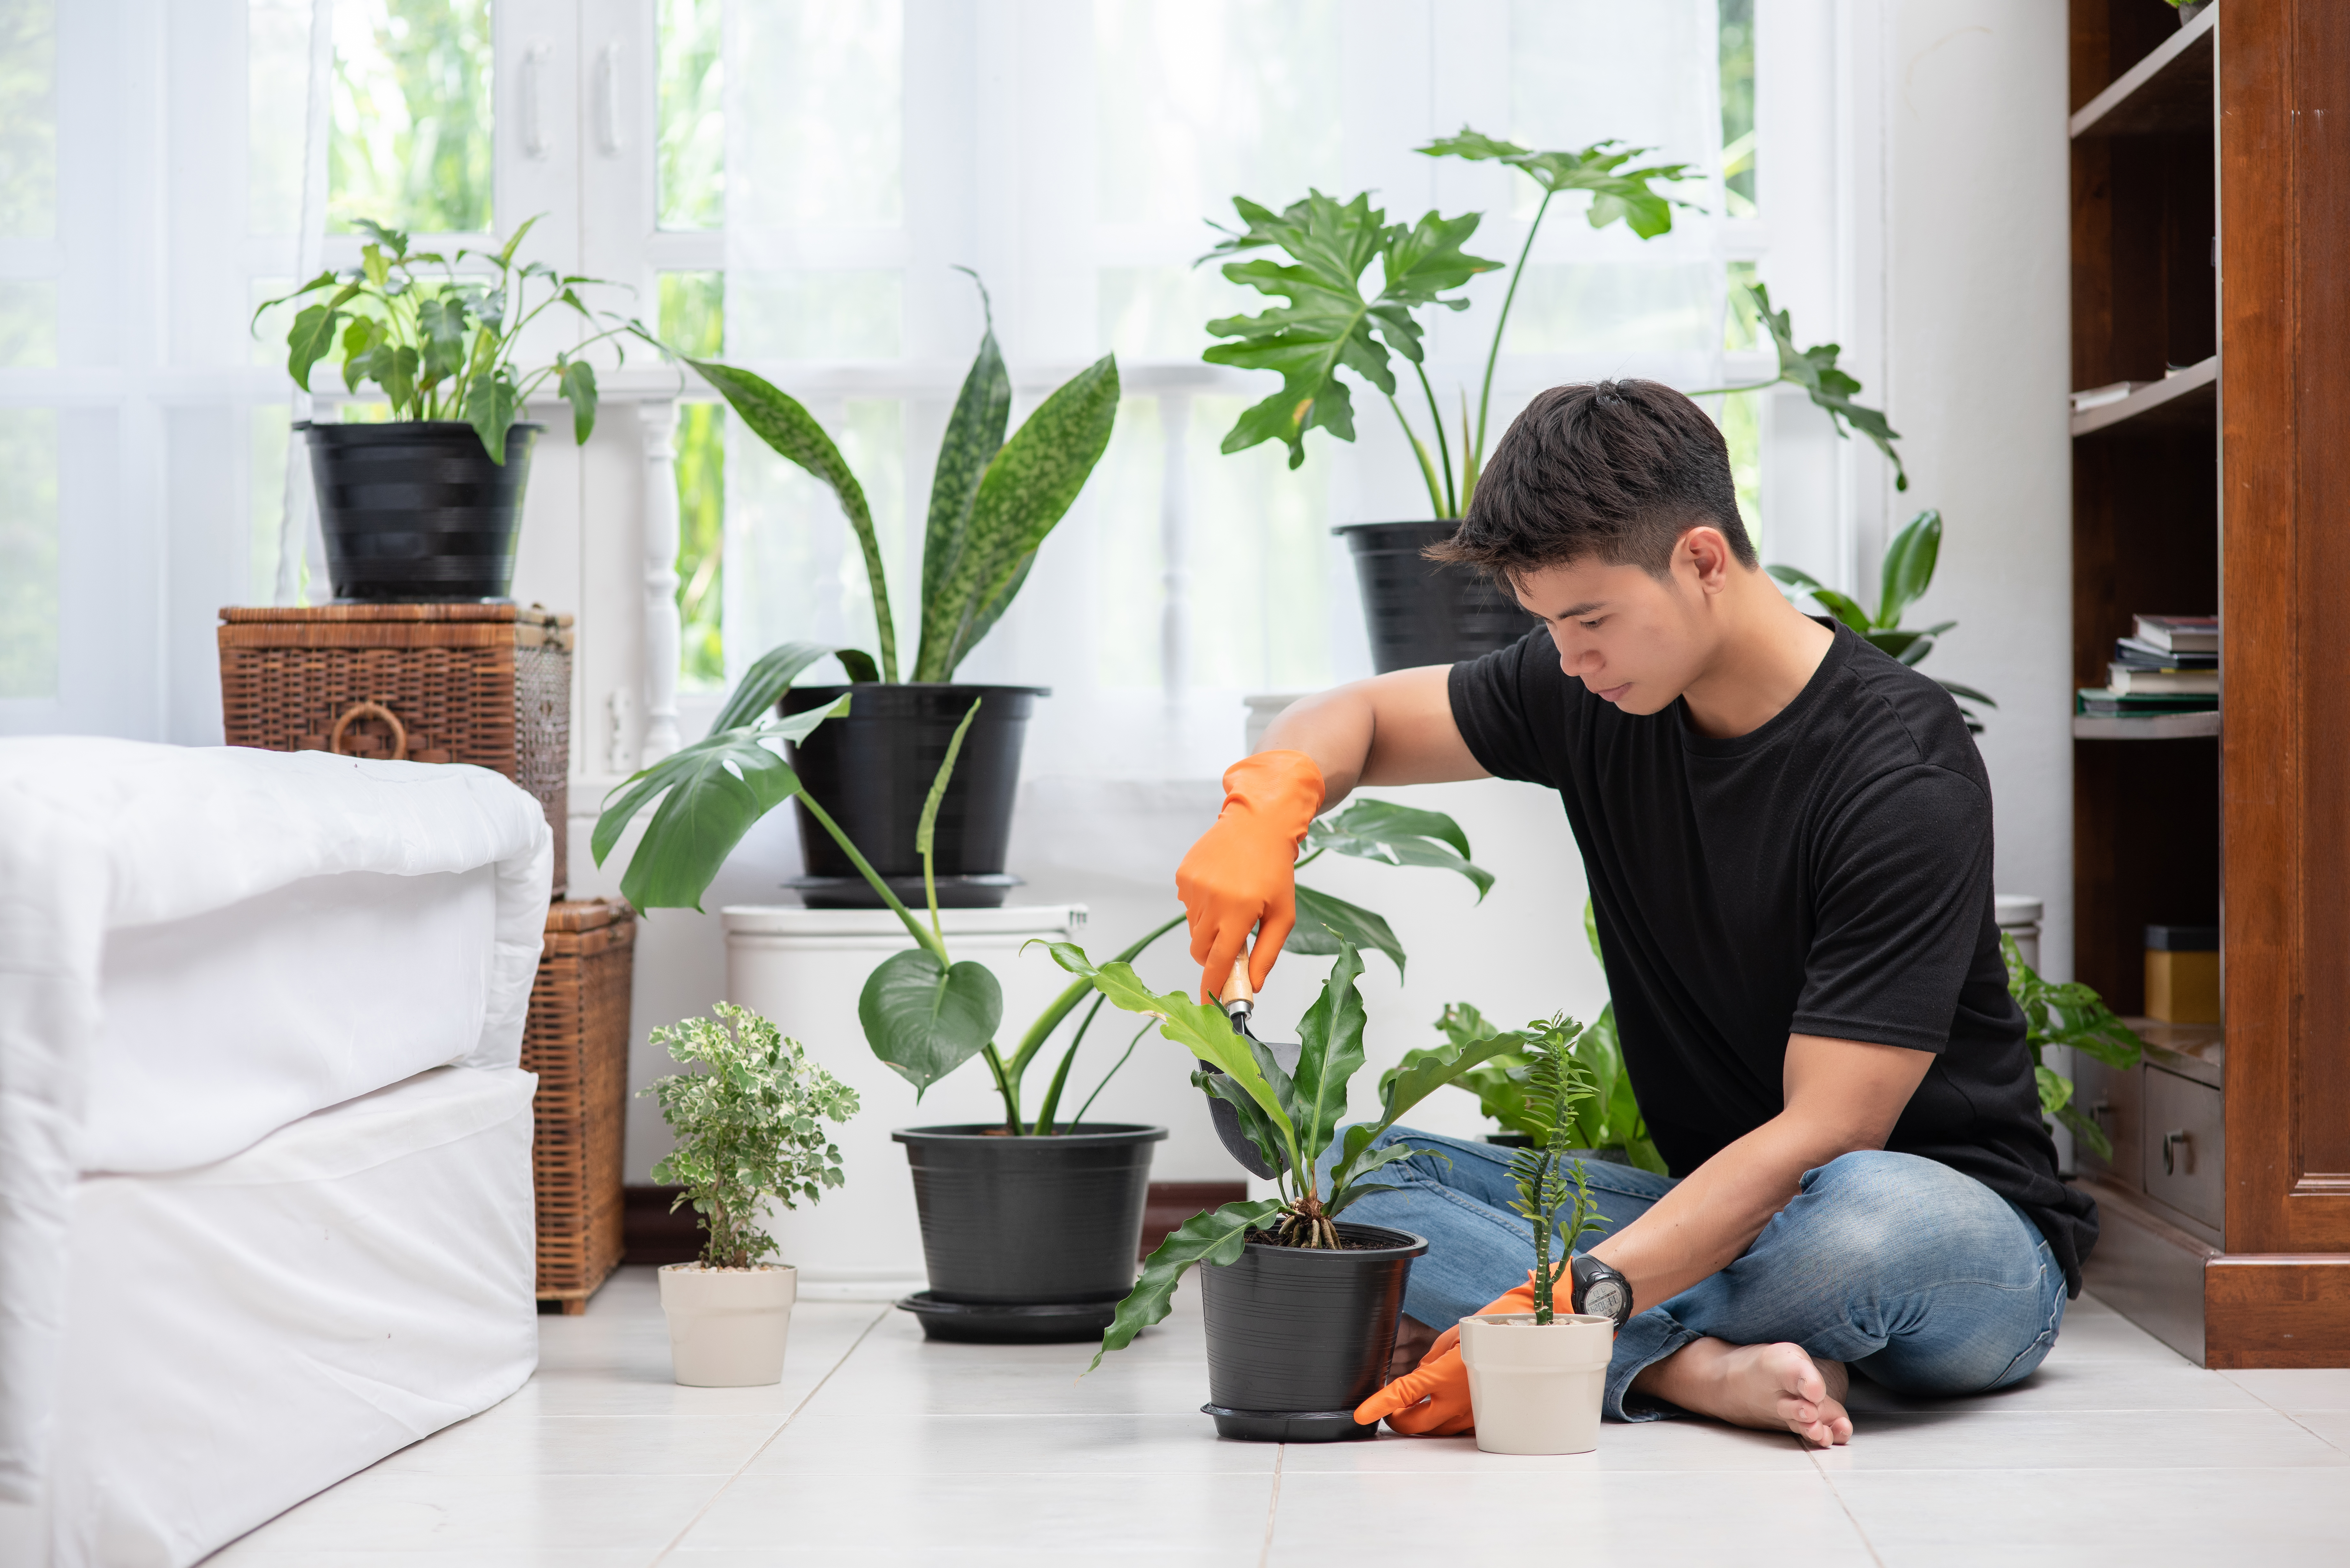 men-wearing-orange-gloves-planting-trees-indoors.jpg